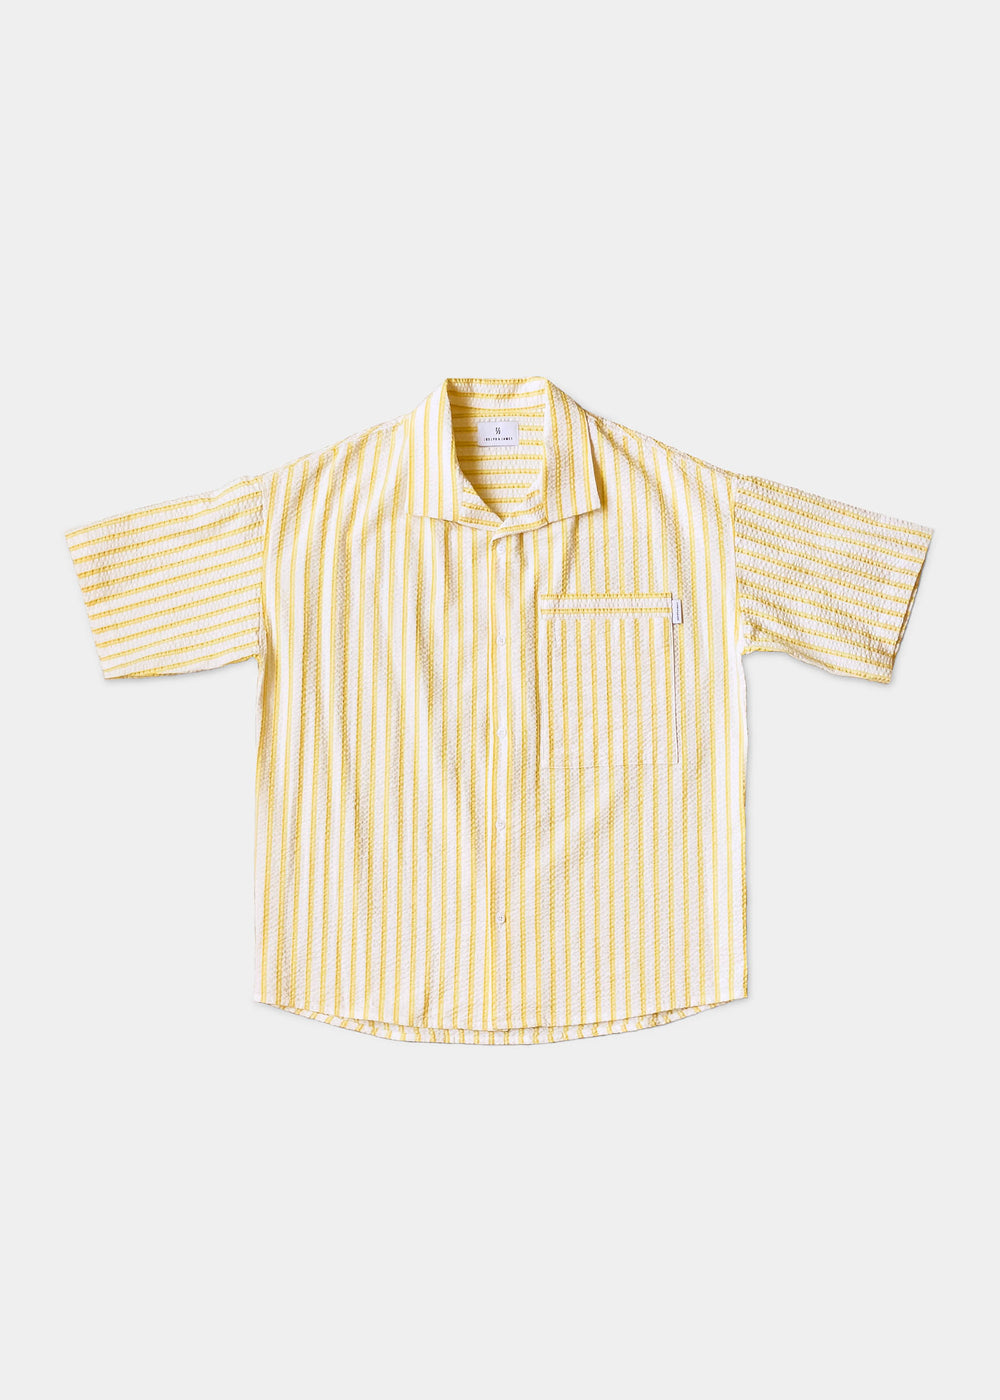 Striped Seersucker Shirt - Sunshine Resort stripe